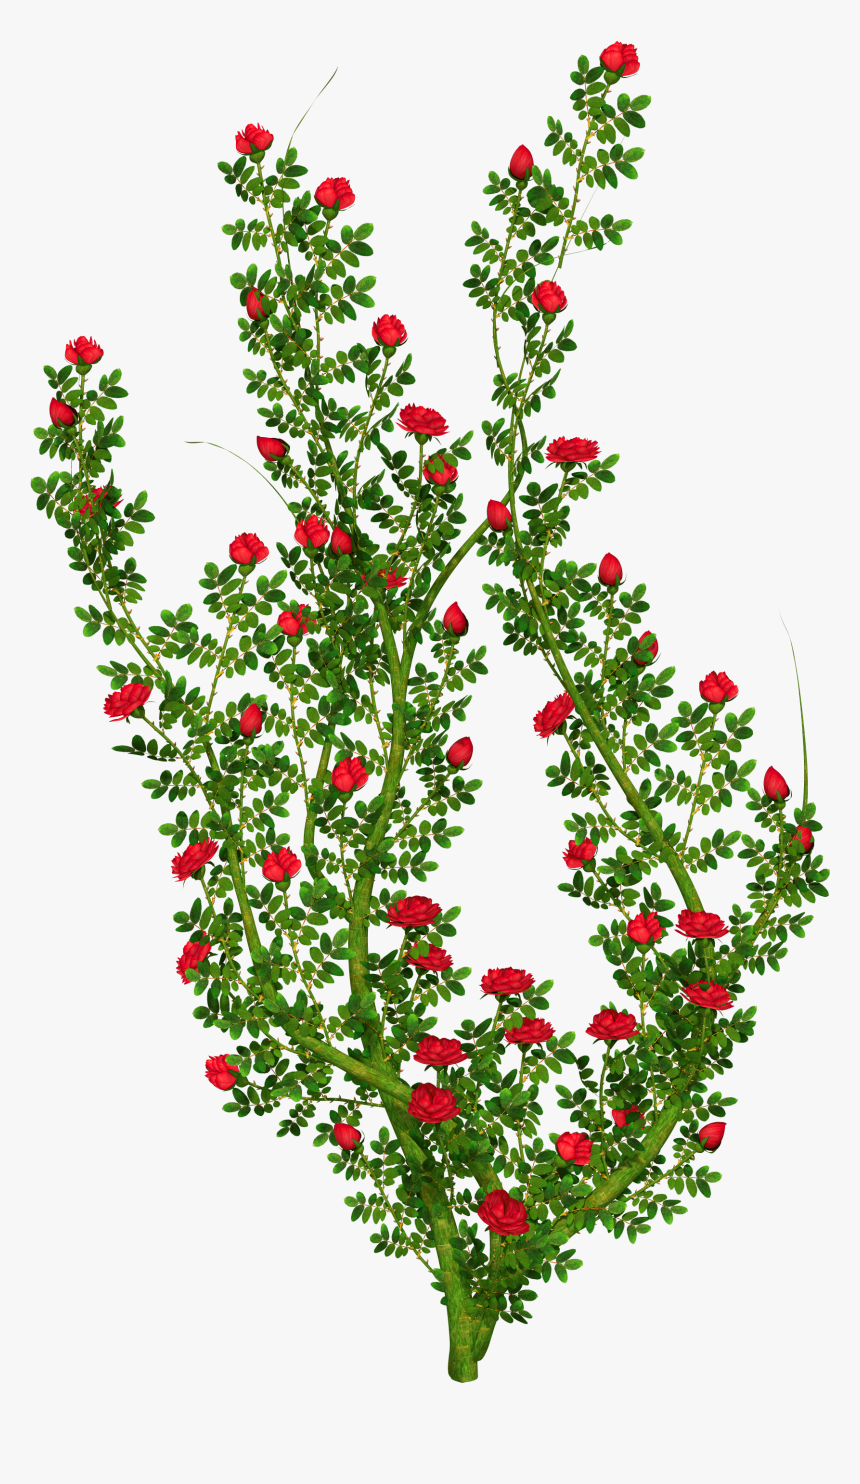 Flower Bush Png - Transparent Background Rose Bush Clipart, Png Download, Free Download